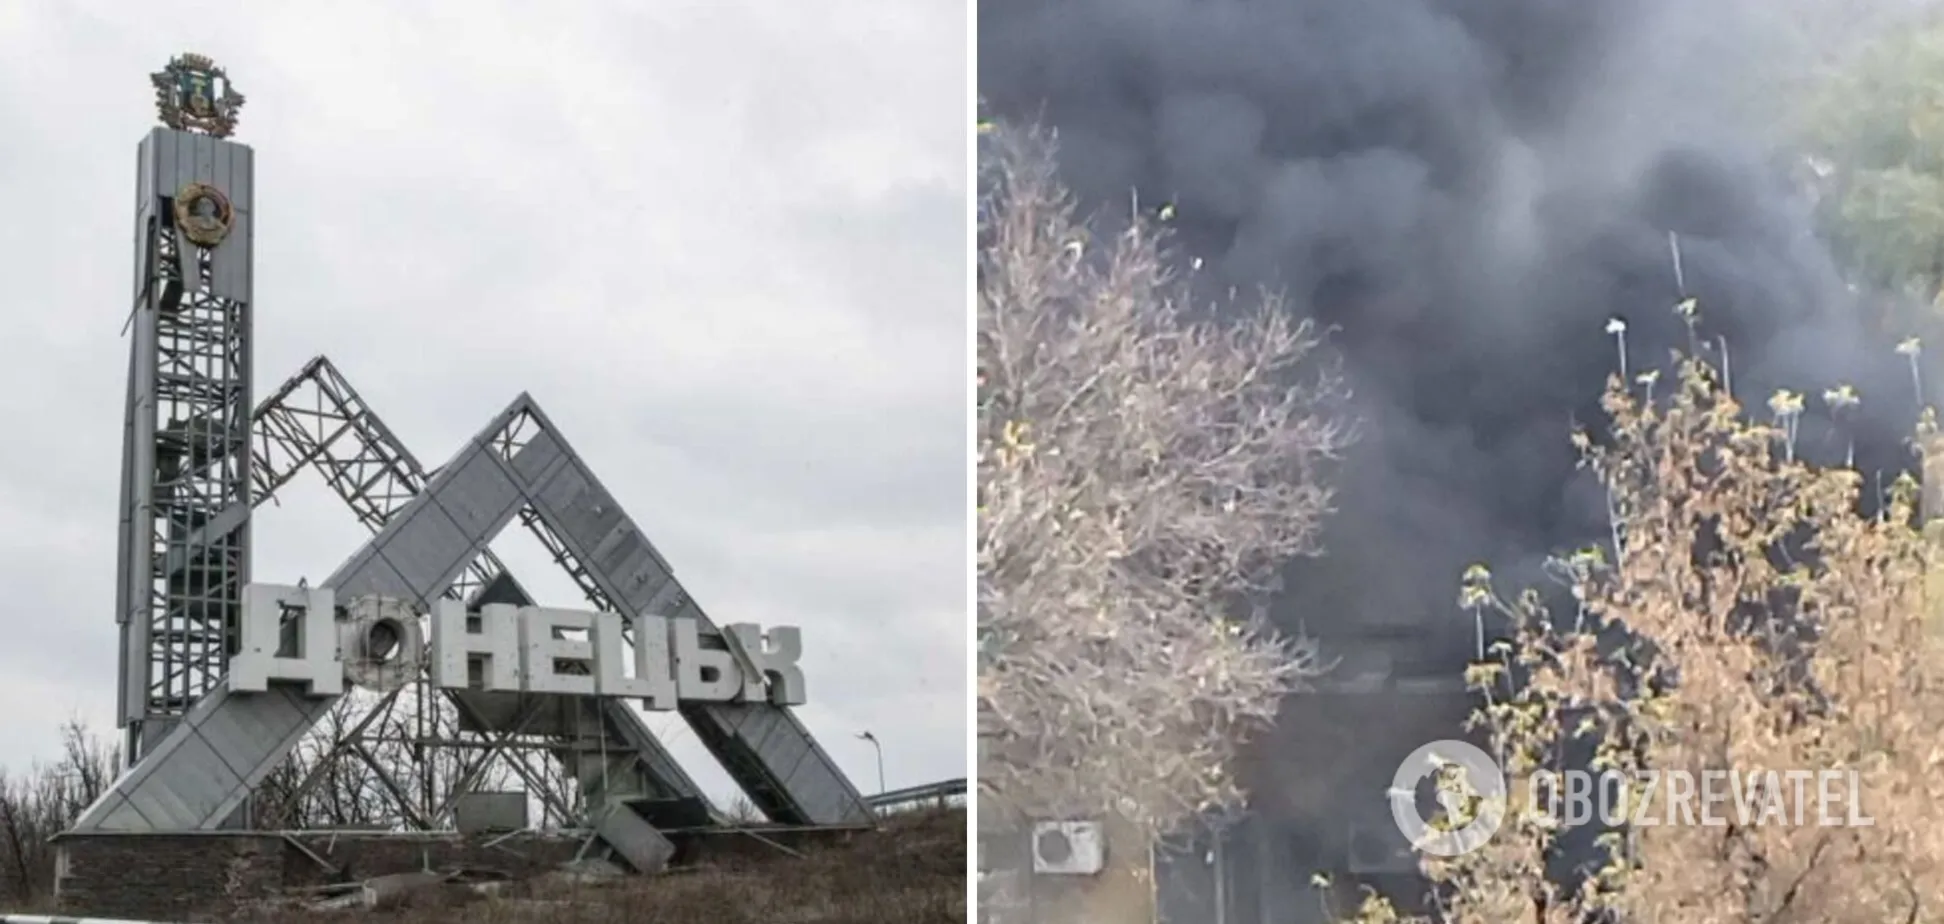 В центре Донецка раздался громкий взрыв: на месте валит дым столбом. Видео и фото